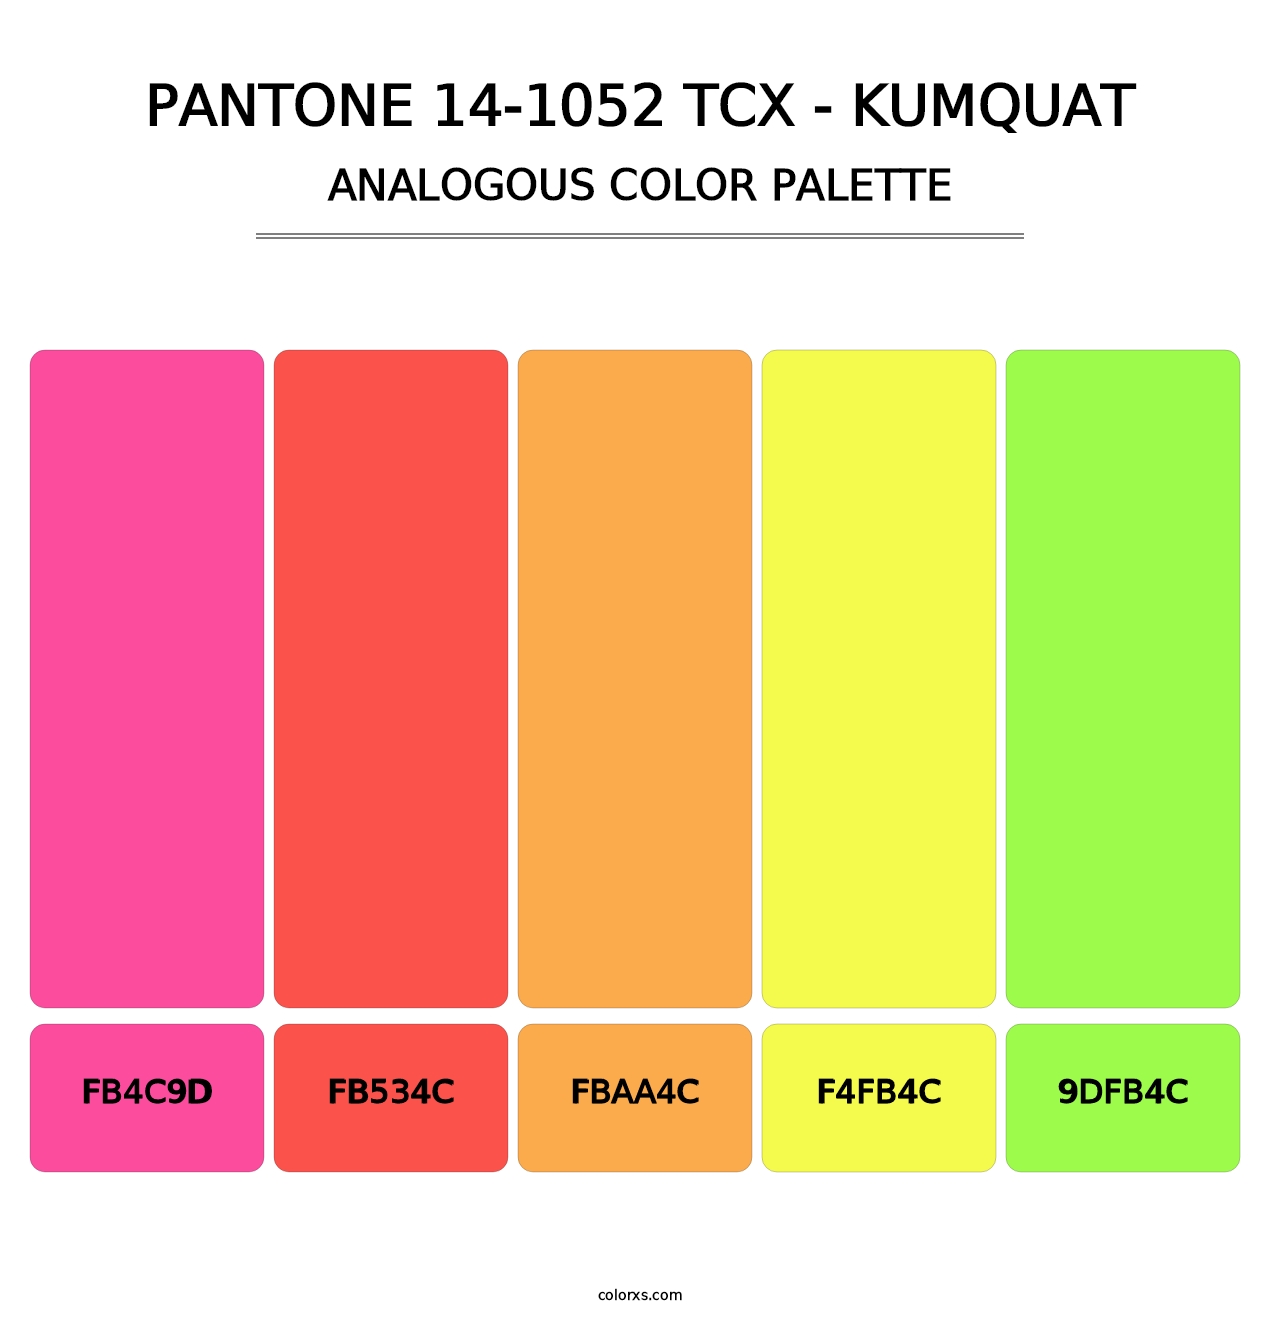 PANTONE 14-1052 TCX - Kumquat - Analogous Color Palette